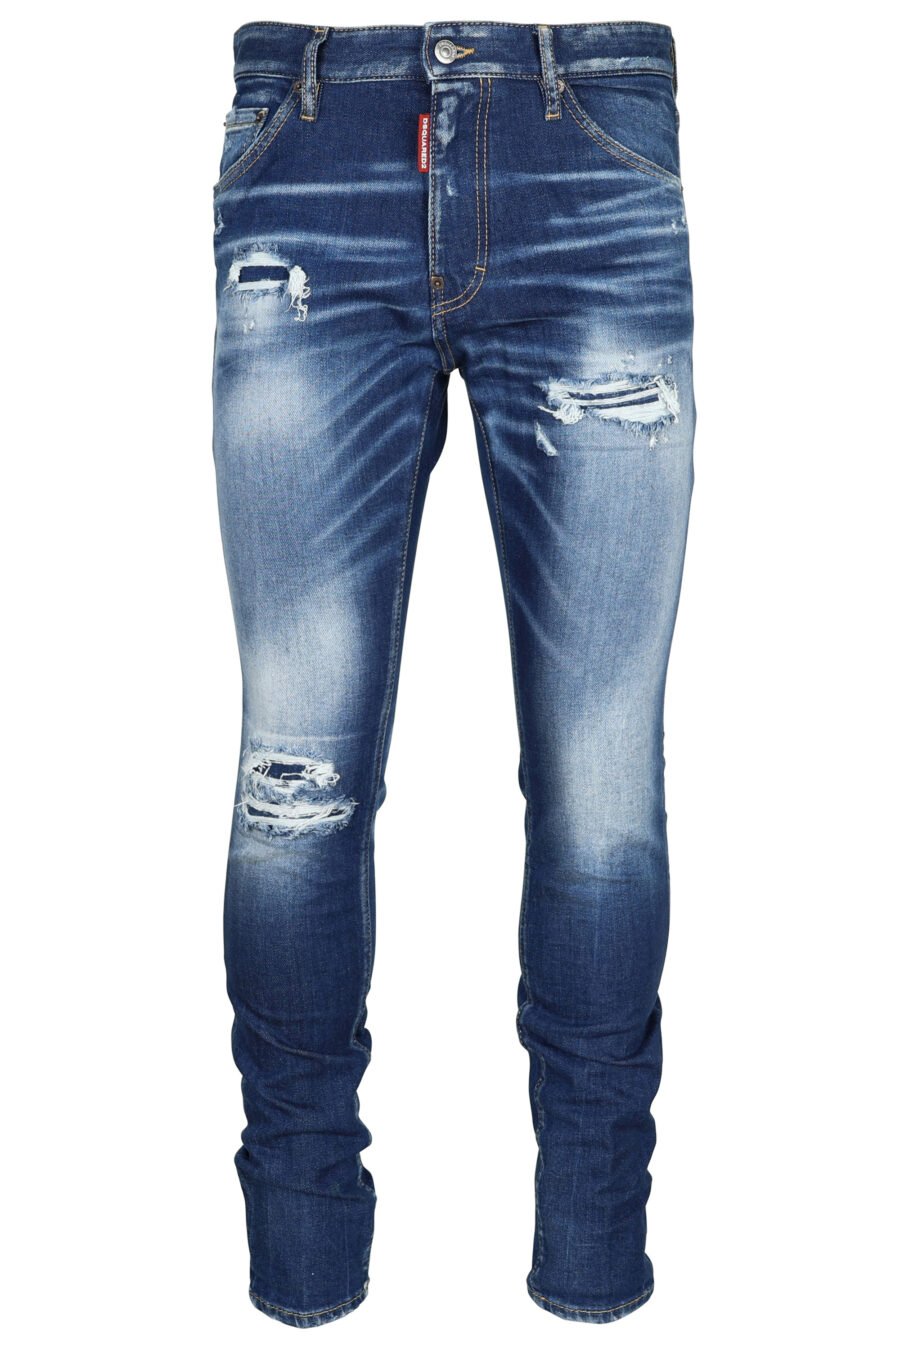 Pantalón vaquero azul claro "cool guy" con efecto lavado y rotos - 8054148339203